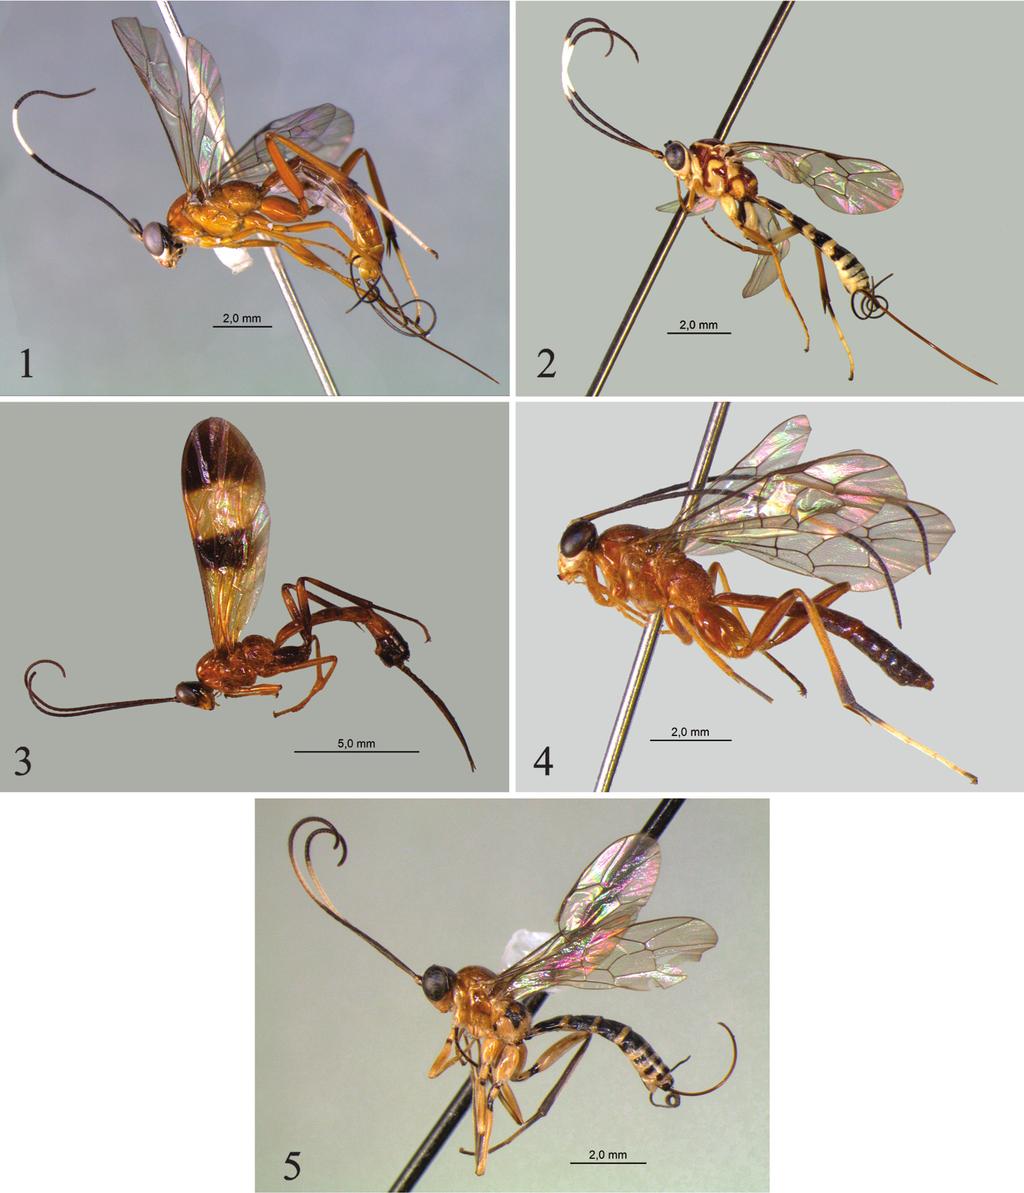 Figs. 1-5. Sphelodon spp., habitus; 1, Sphelodon brunicornis n. sp.; 2, Sphelodon boraceiensis n. sp.; 3, Sphelodon zuleidei n. sp.; 4, Sphelodon plaumanni n.